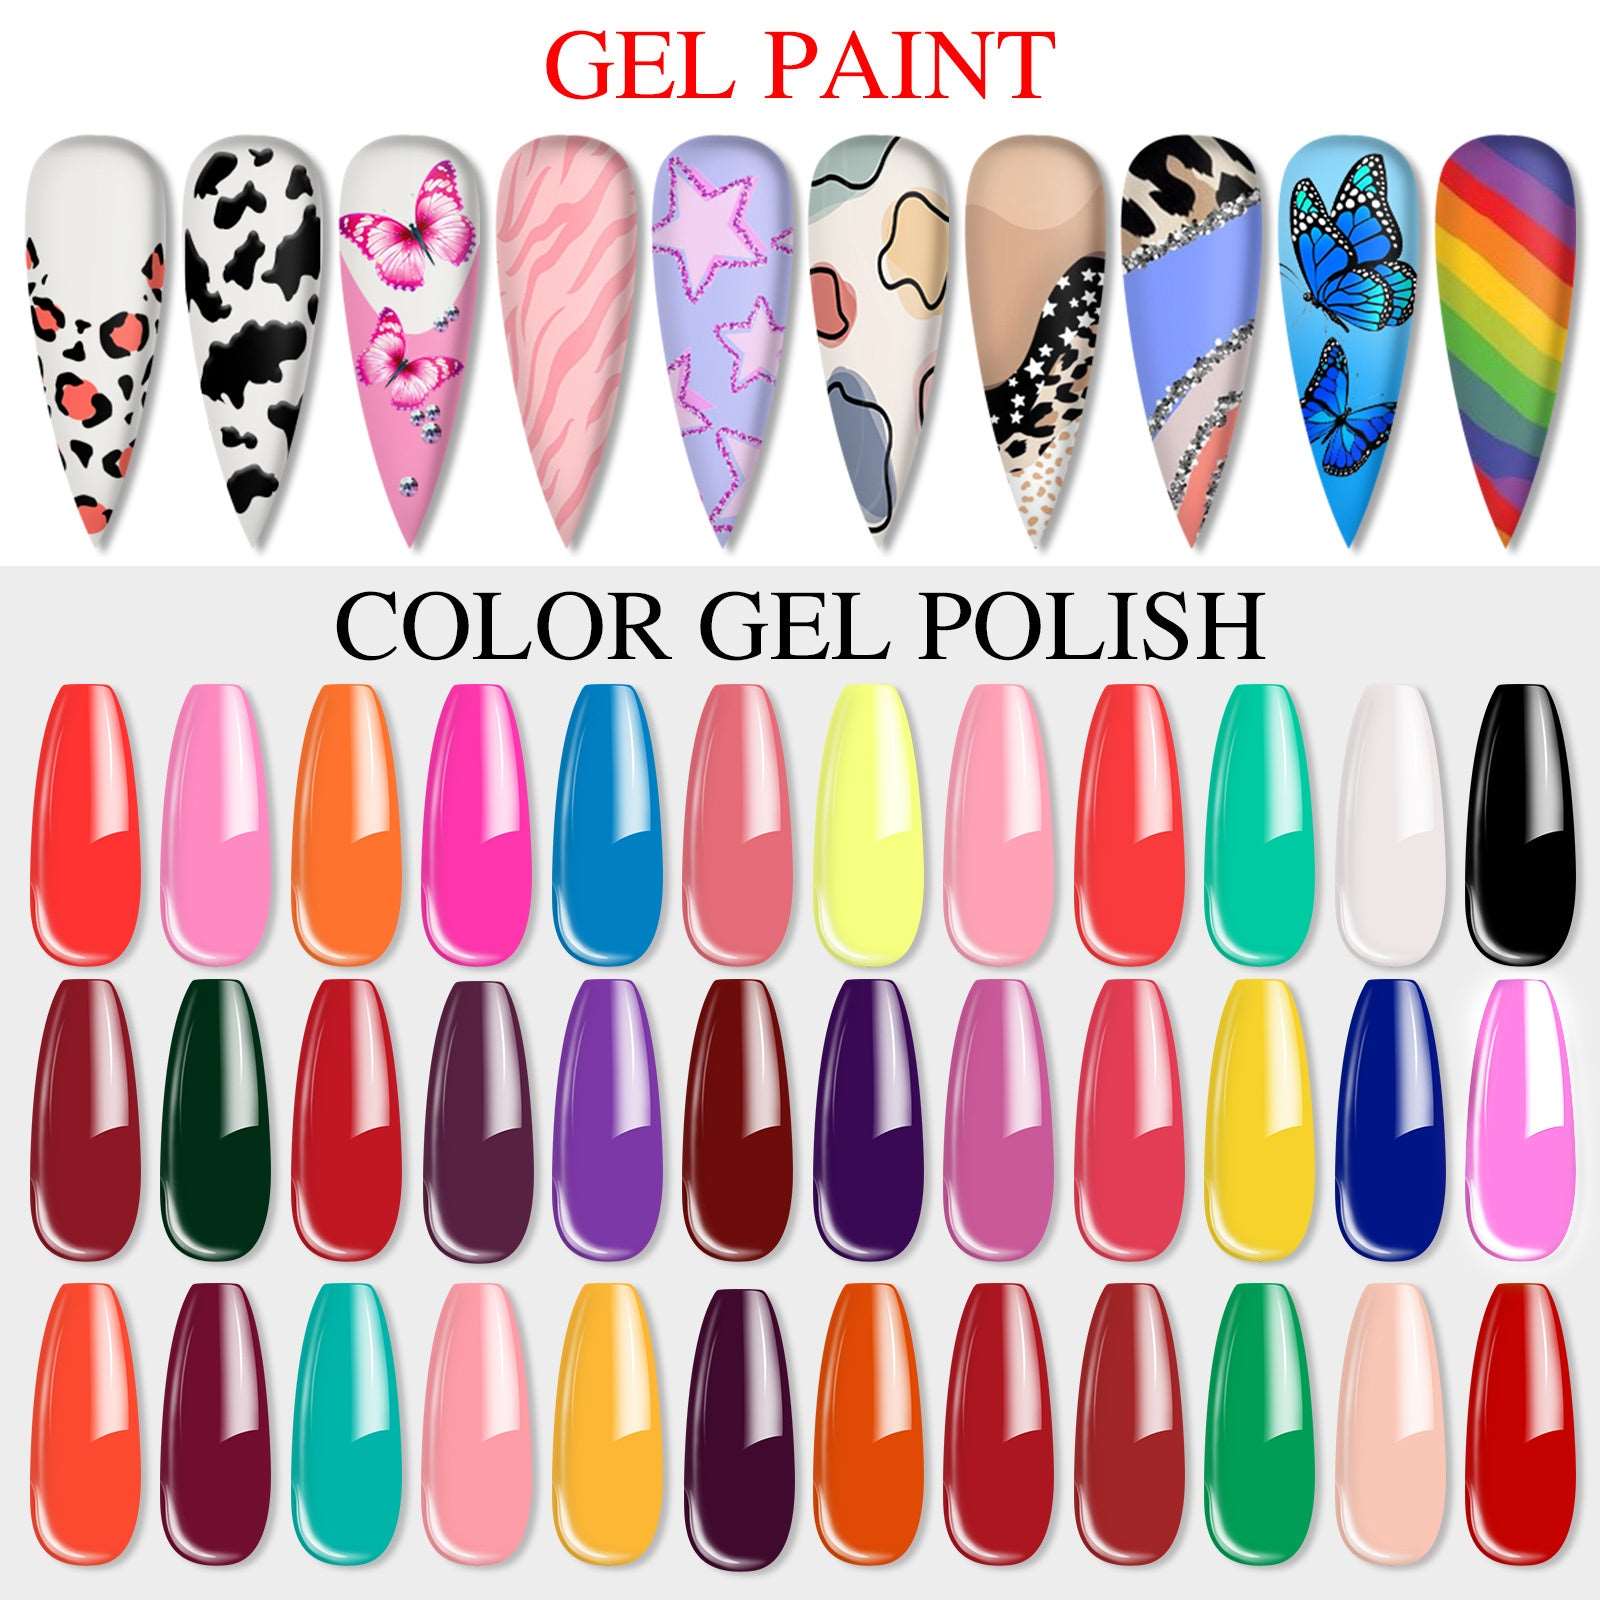 36 Colors Gel Nail Polish Paint kit